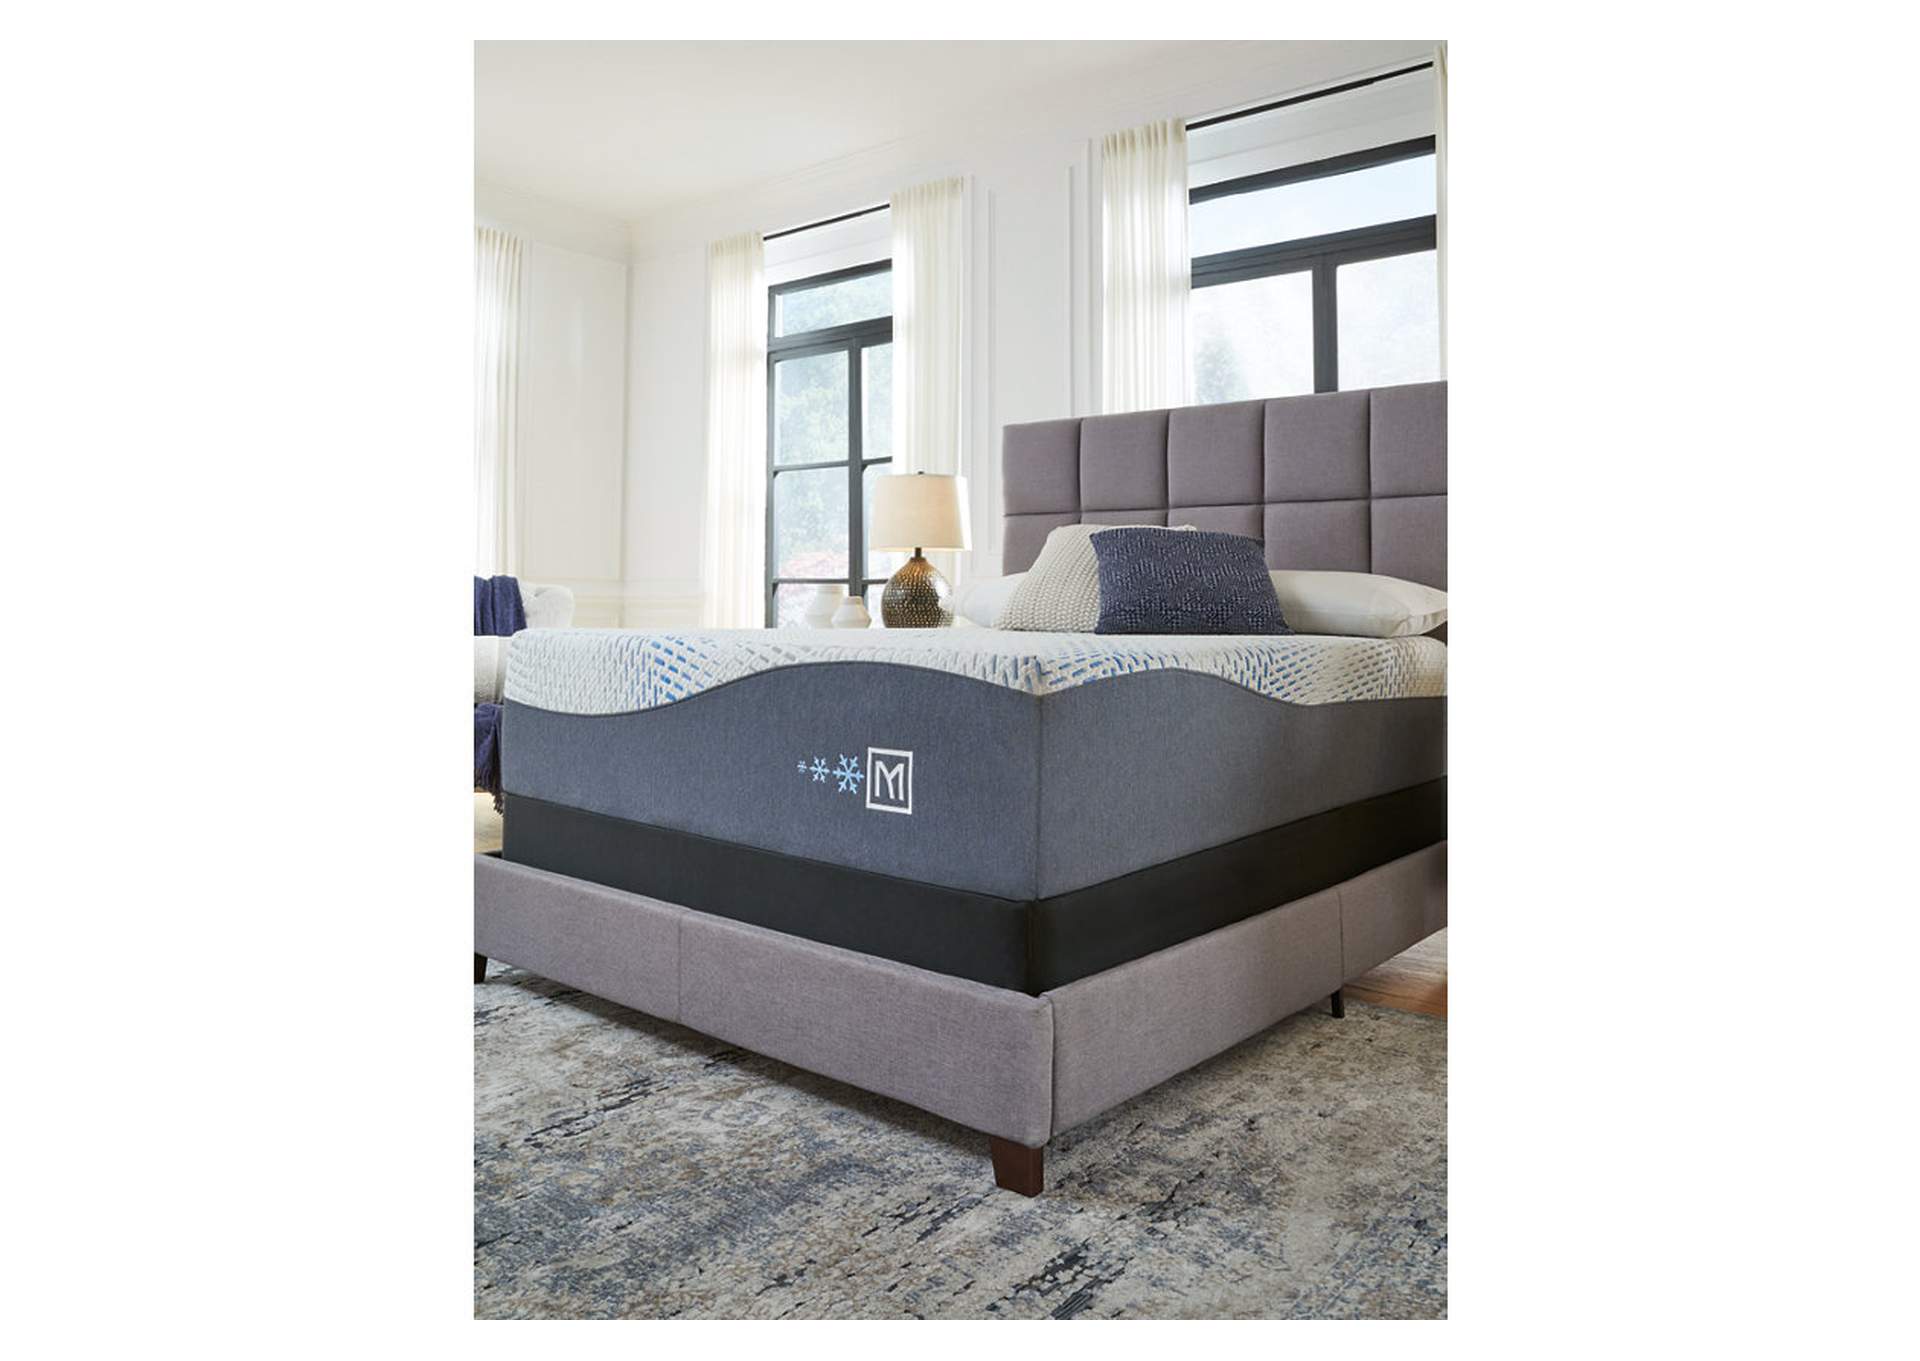 Millennium Cushion Firm Gel Memory Foam Hybrid King Mattress,Sierra Sleep by Ashley